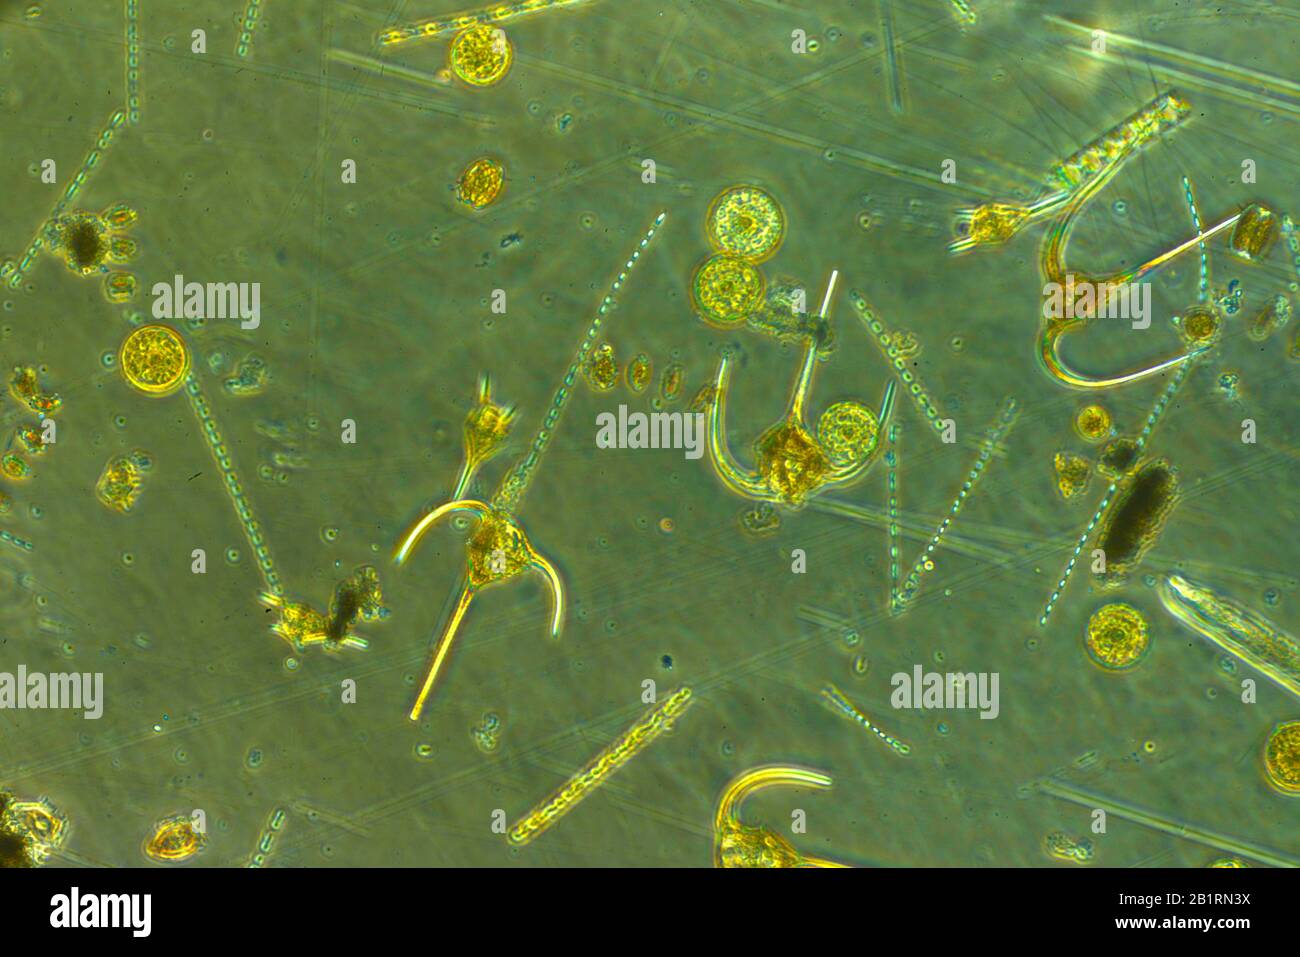 dinoflagellate ,bioluminescence, Dinoflagellates,  flagellum, protista, .flagellate eukaryotes, Dinoflagellata,  marine, plankton, photosynthetic,  mi Stock Photo